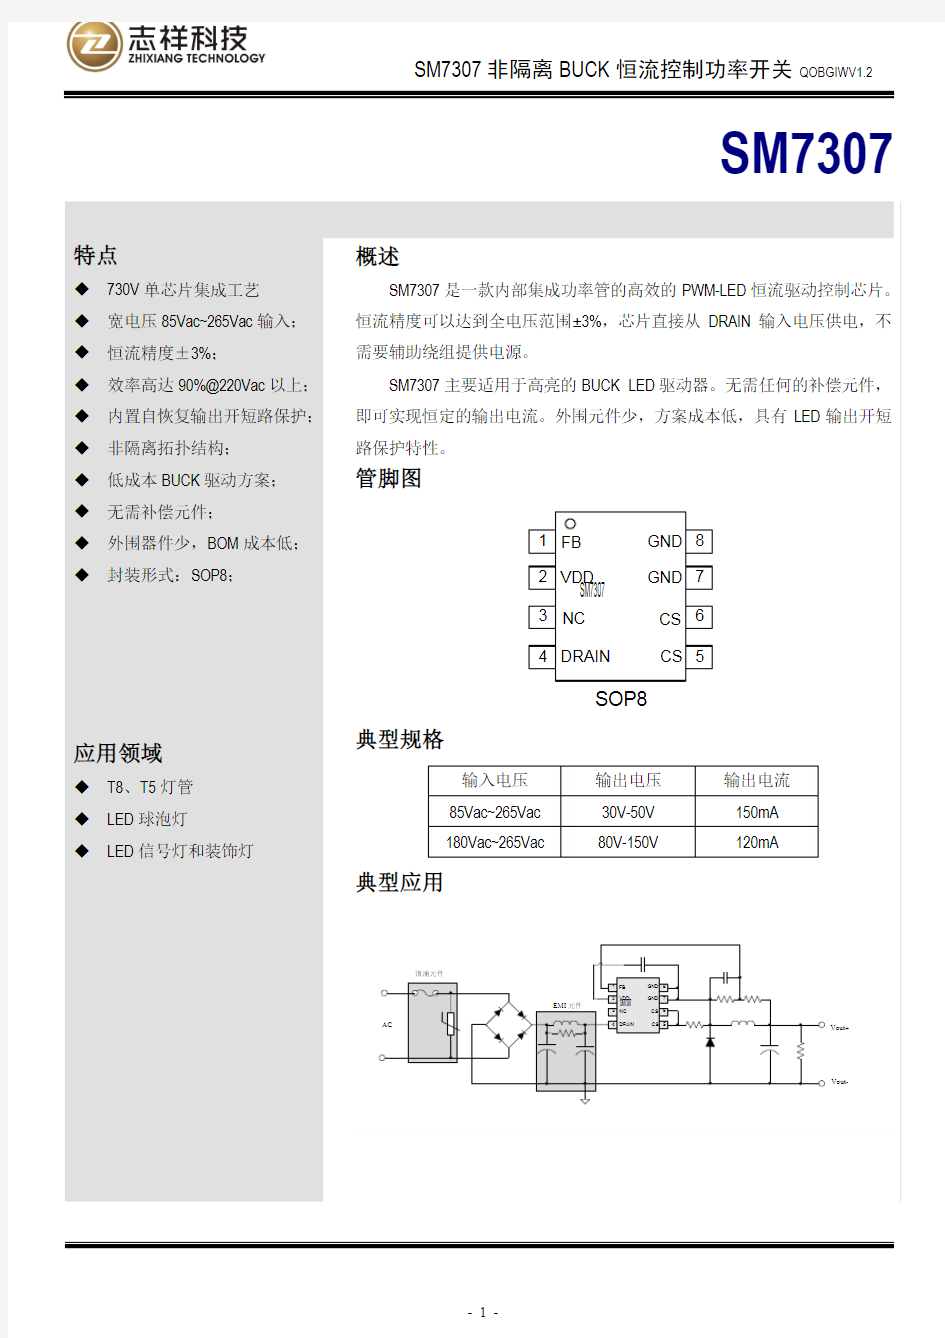 SM7307 高效LED恒流控制功率开关(非隔离)